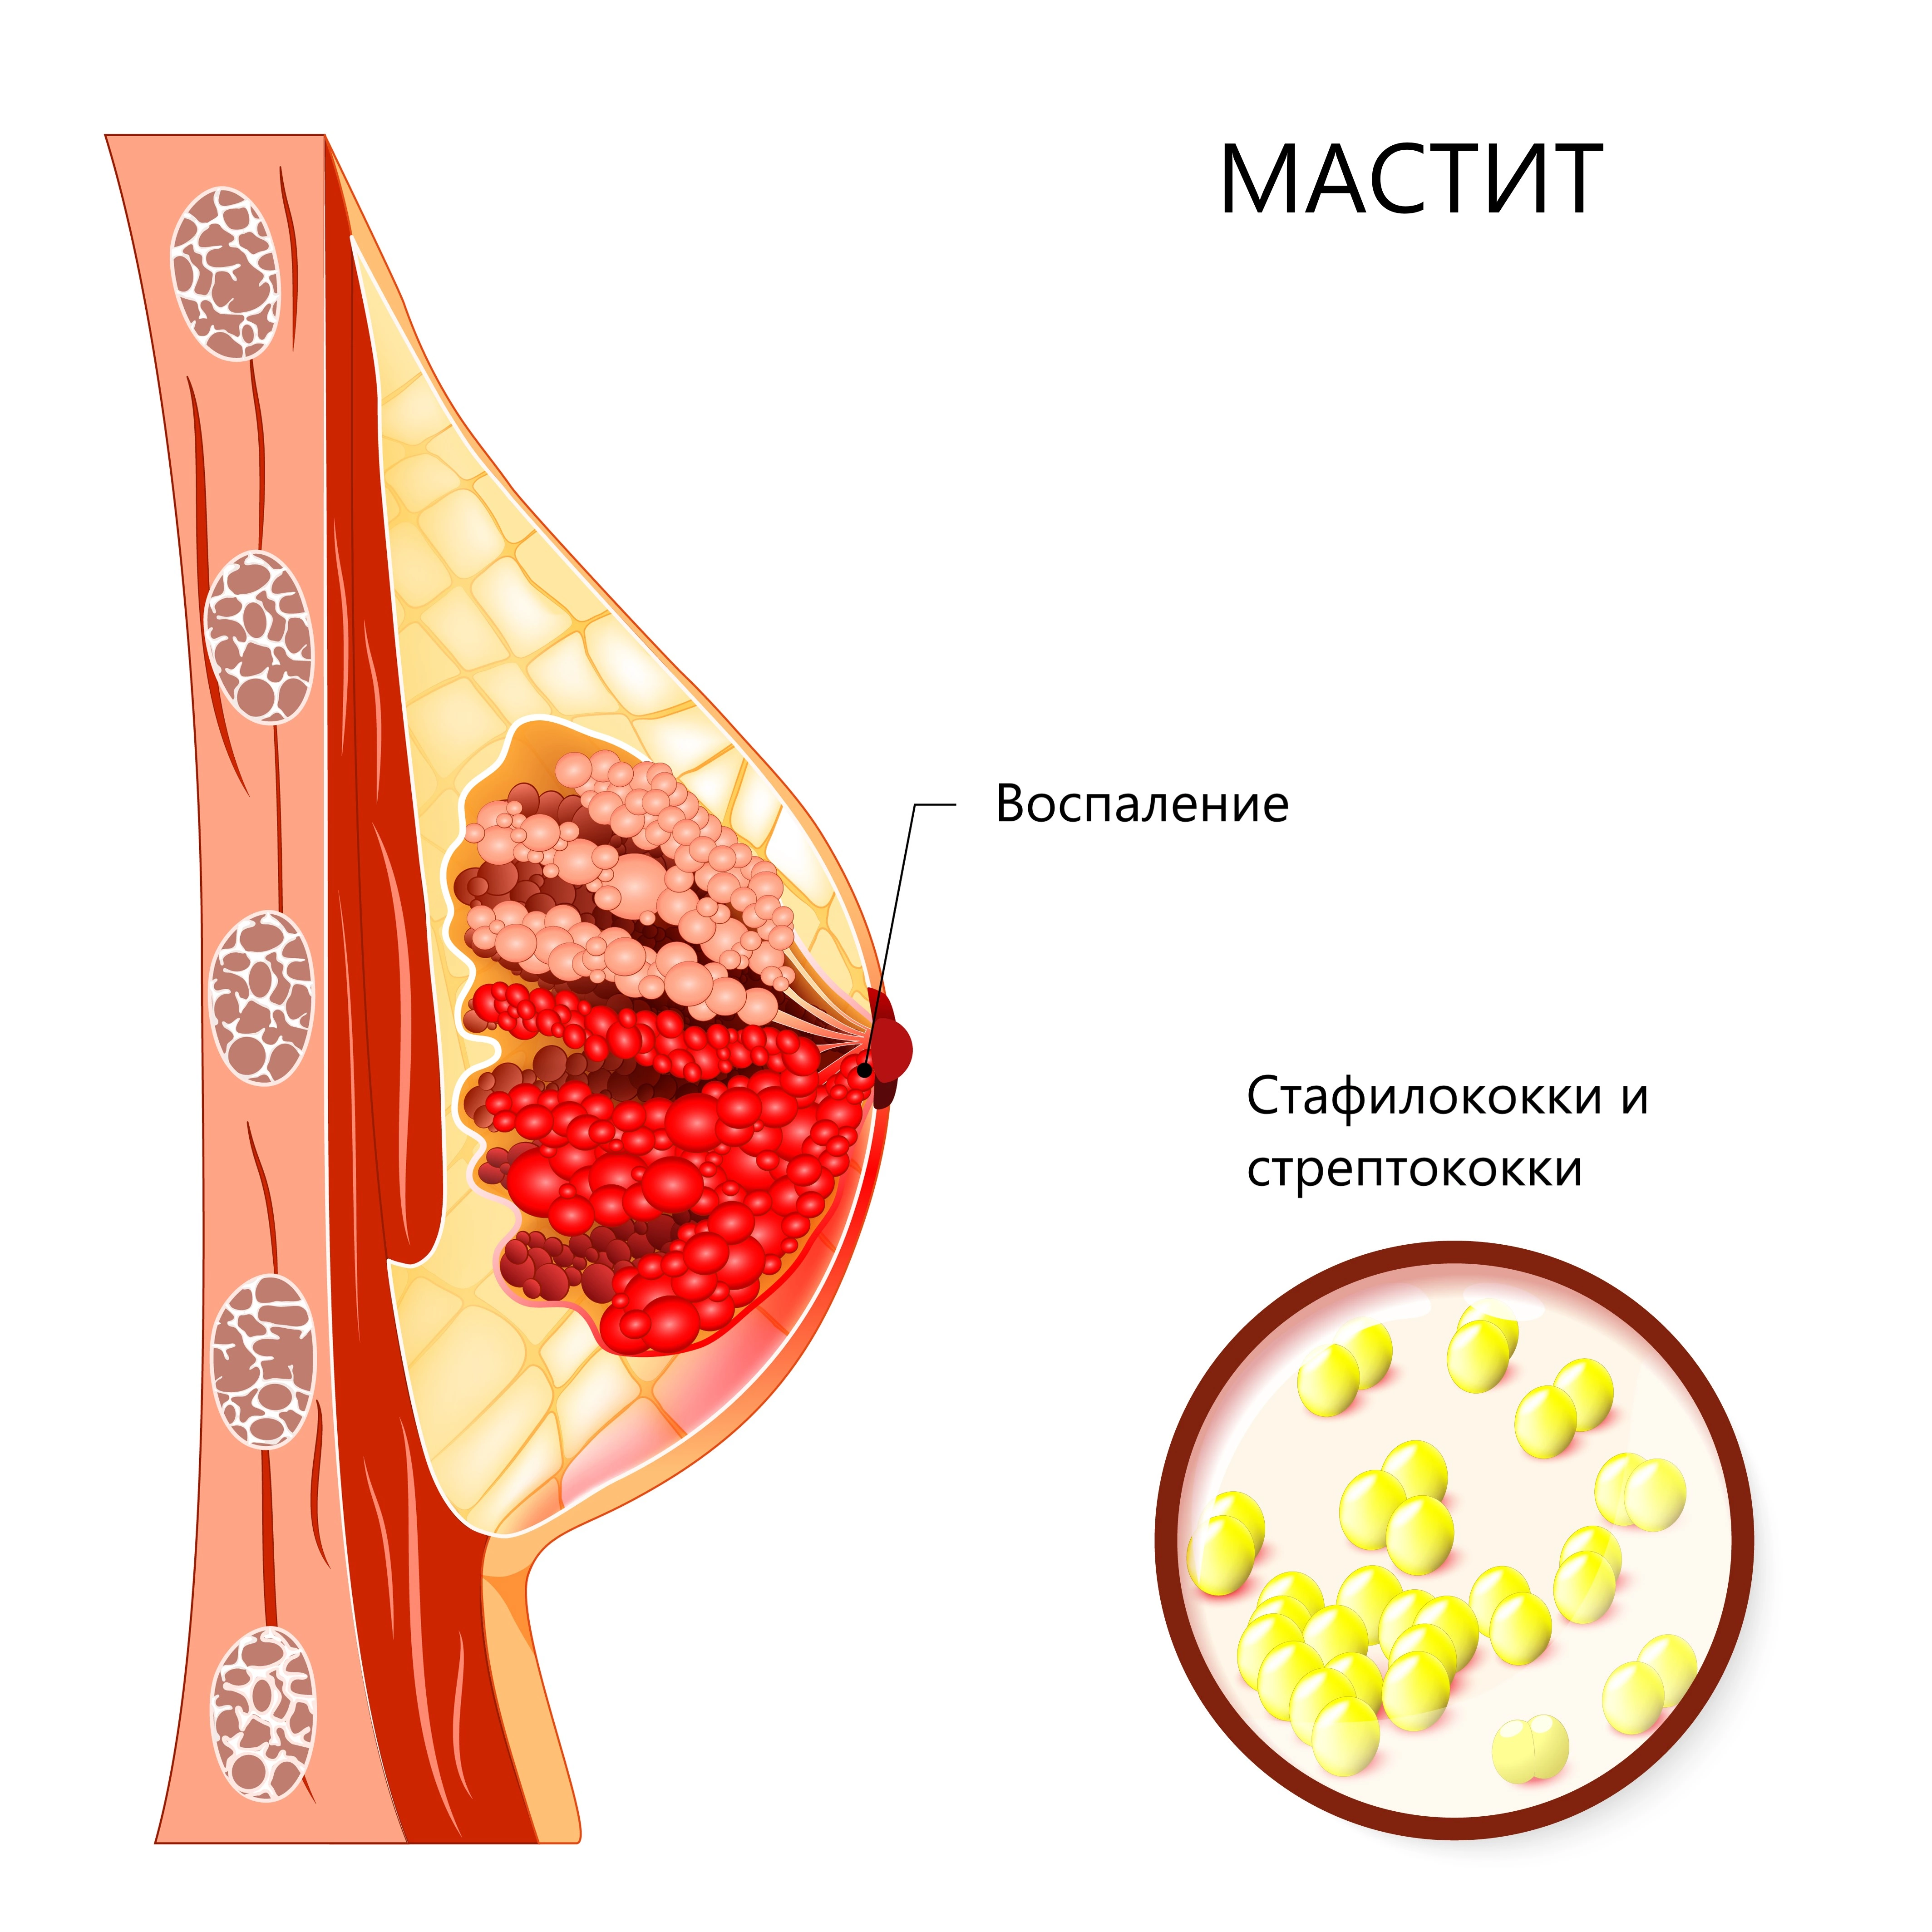 Lactation mastitis